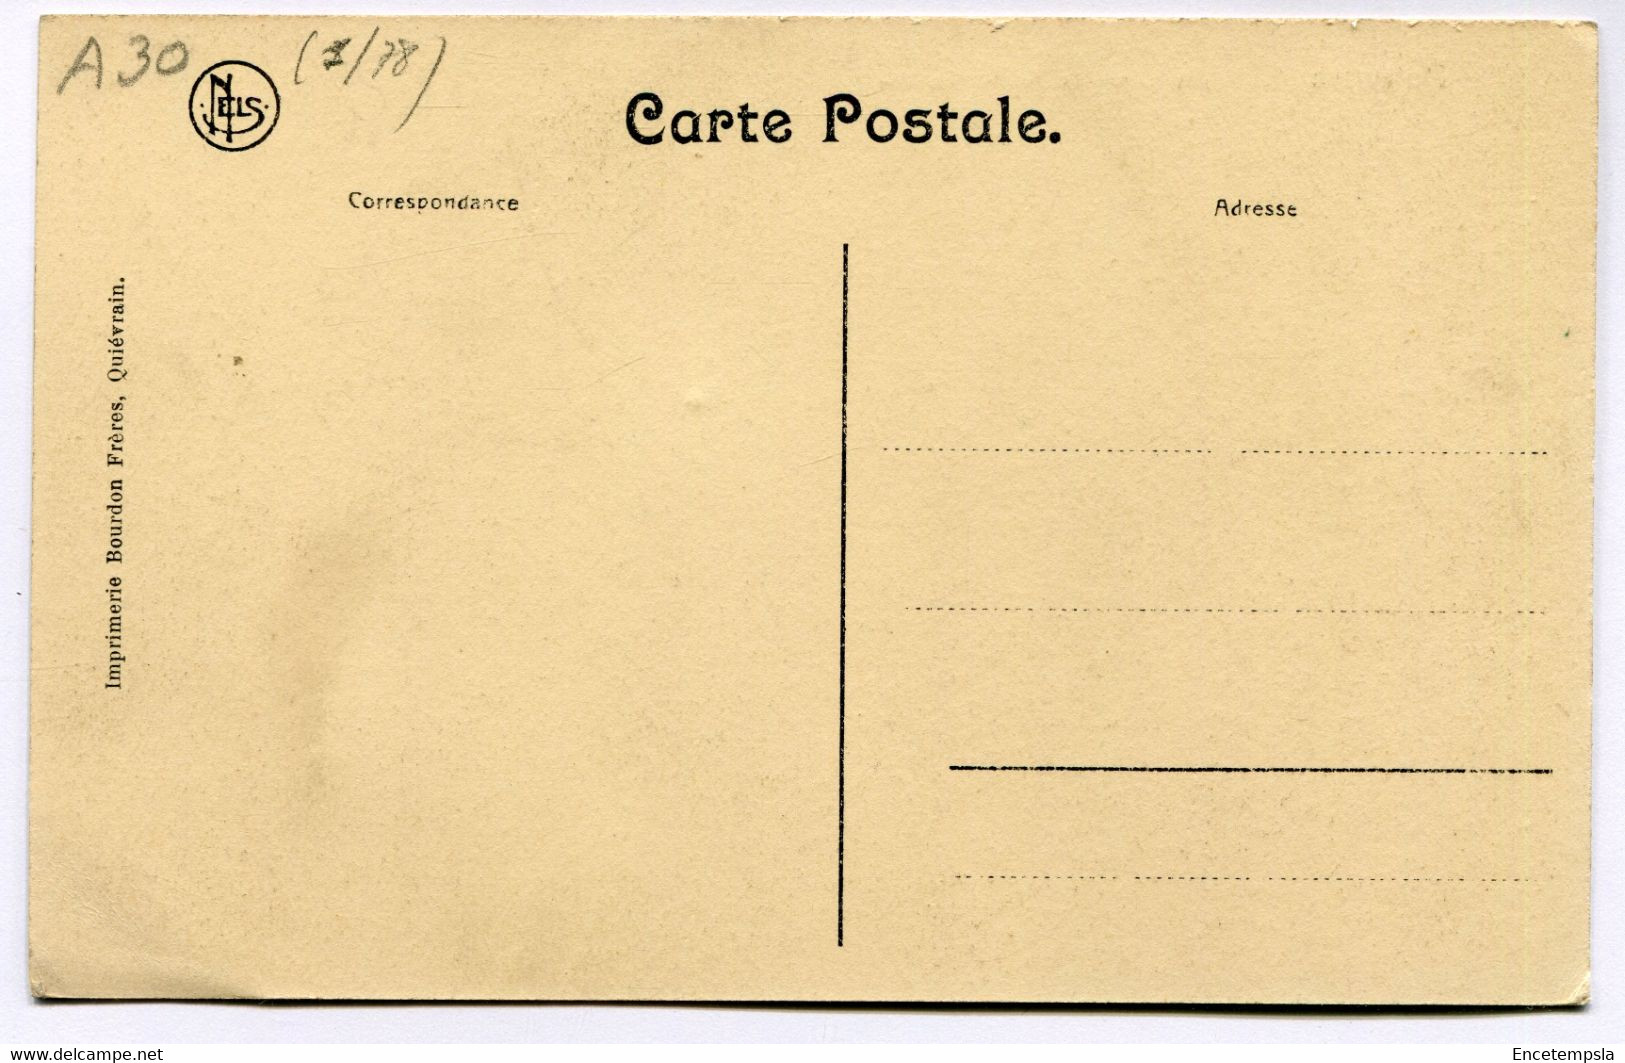 CPA - Carte Postale - Belgique - Quiévrain - Les Ruines Du Moulin Vallois  (DG15043) - Quiévrain